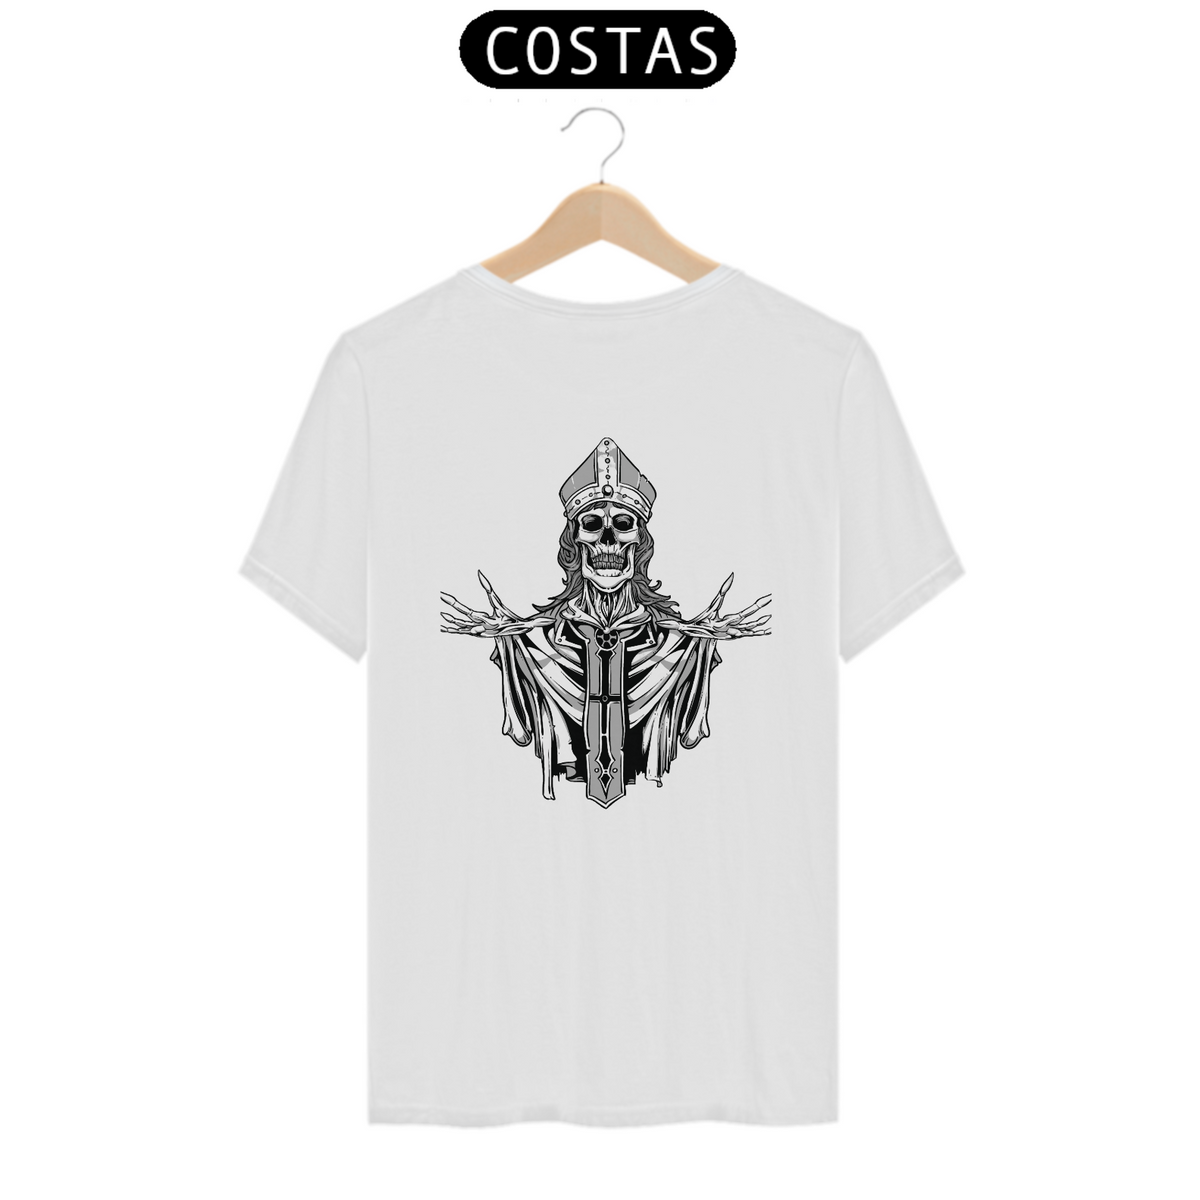 Nome do produto: Camiseta o Esqueleto